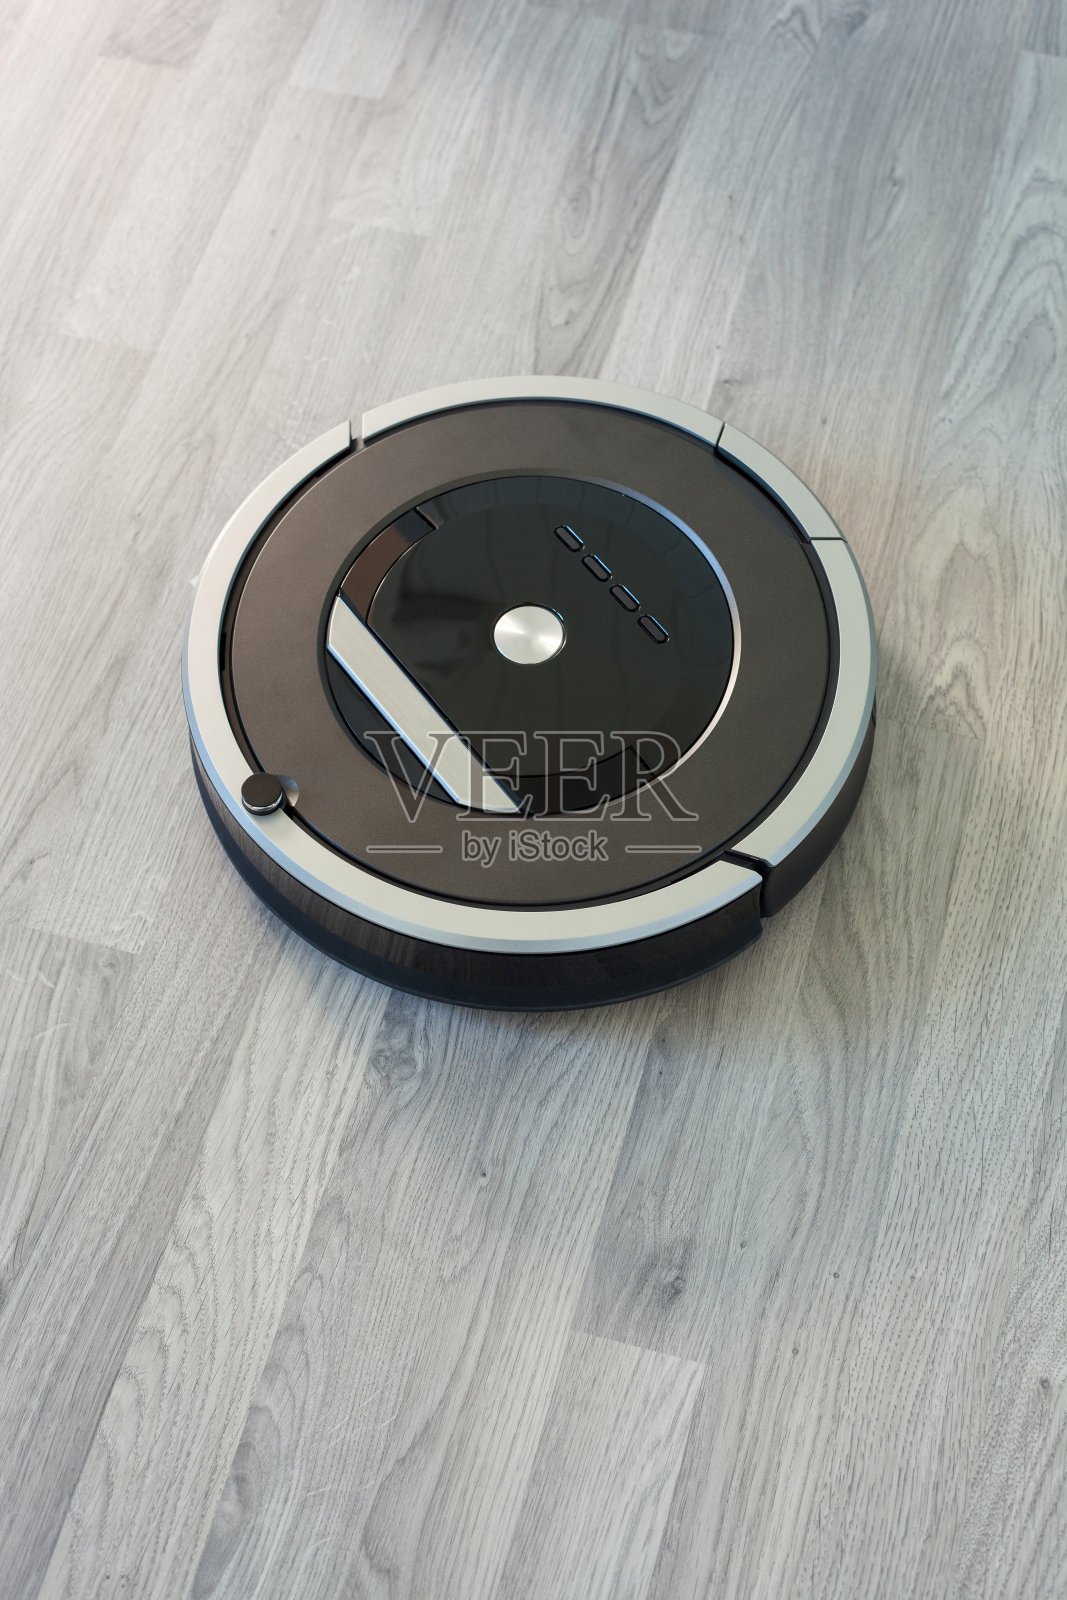 机器人真空吸尘器强化木地板智能清洁技术照片摄影图片